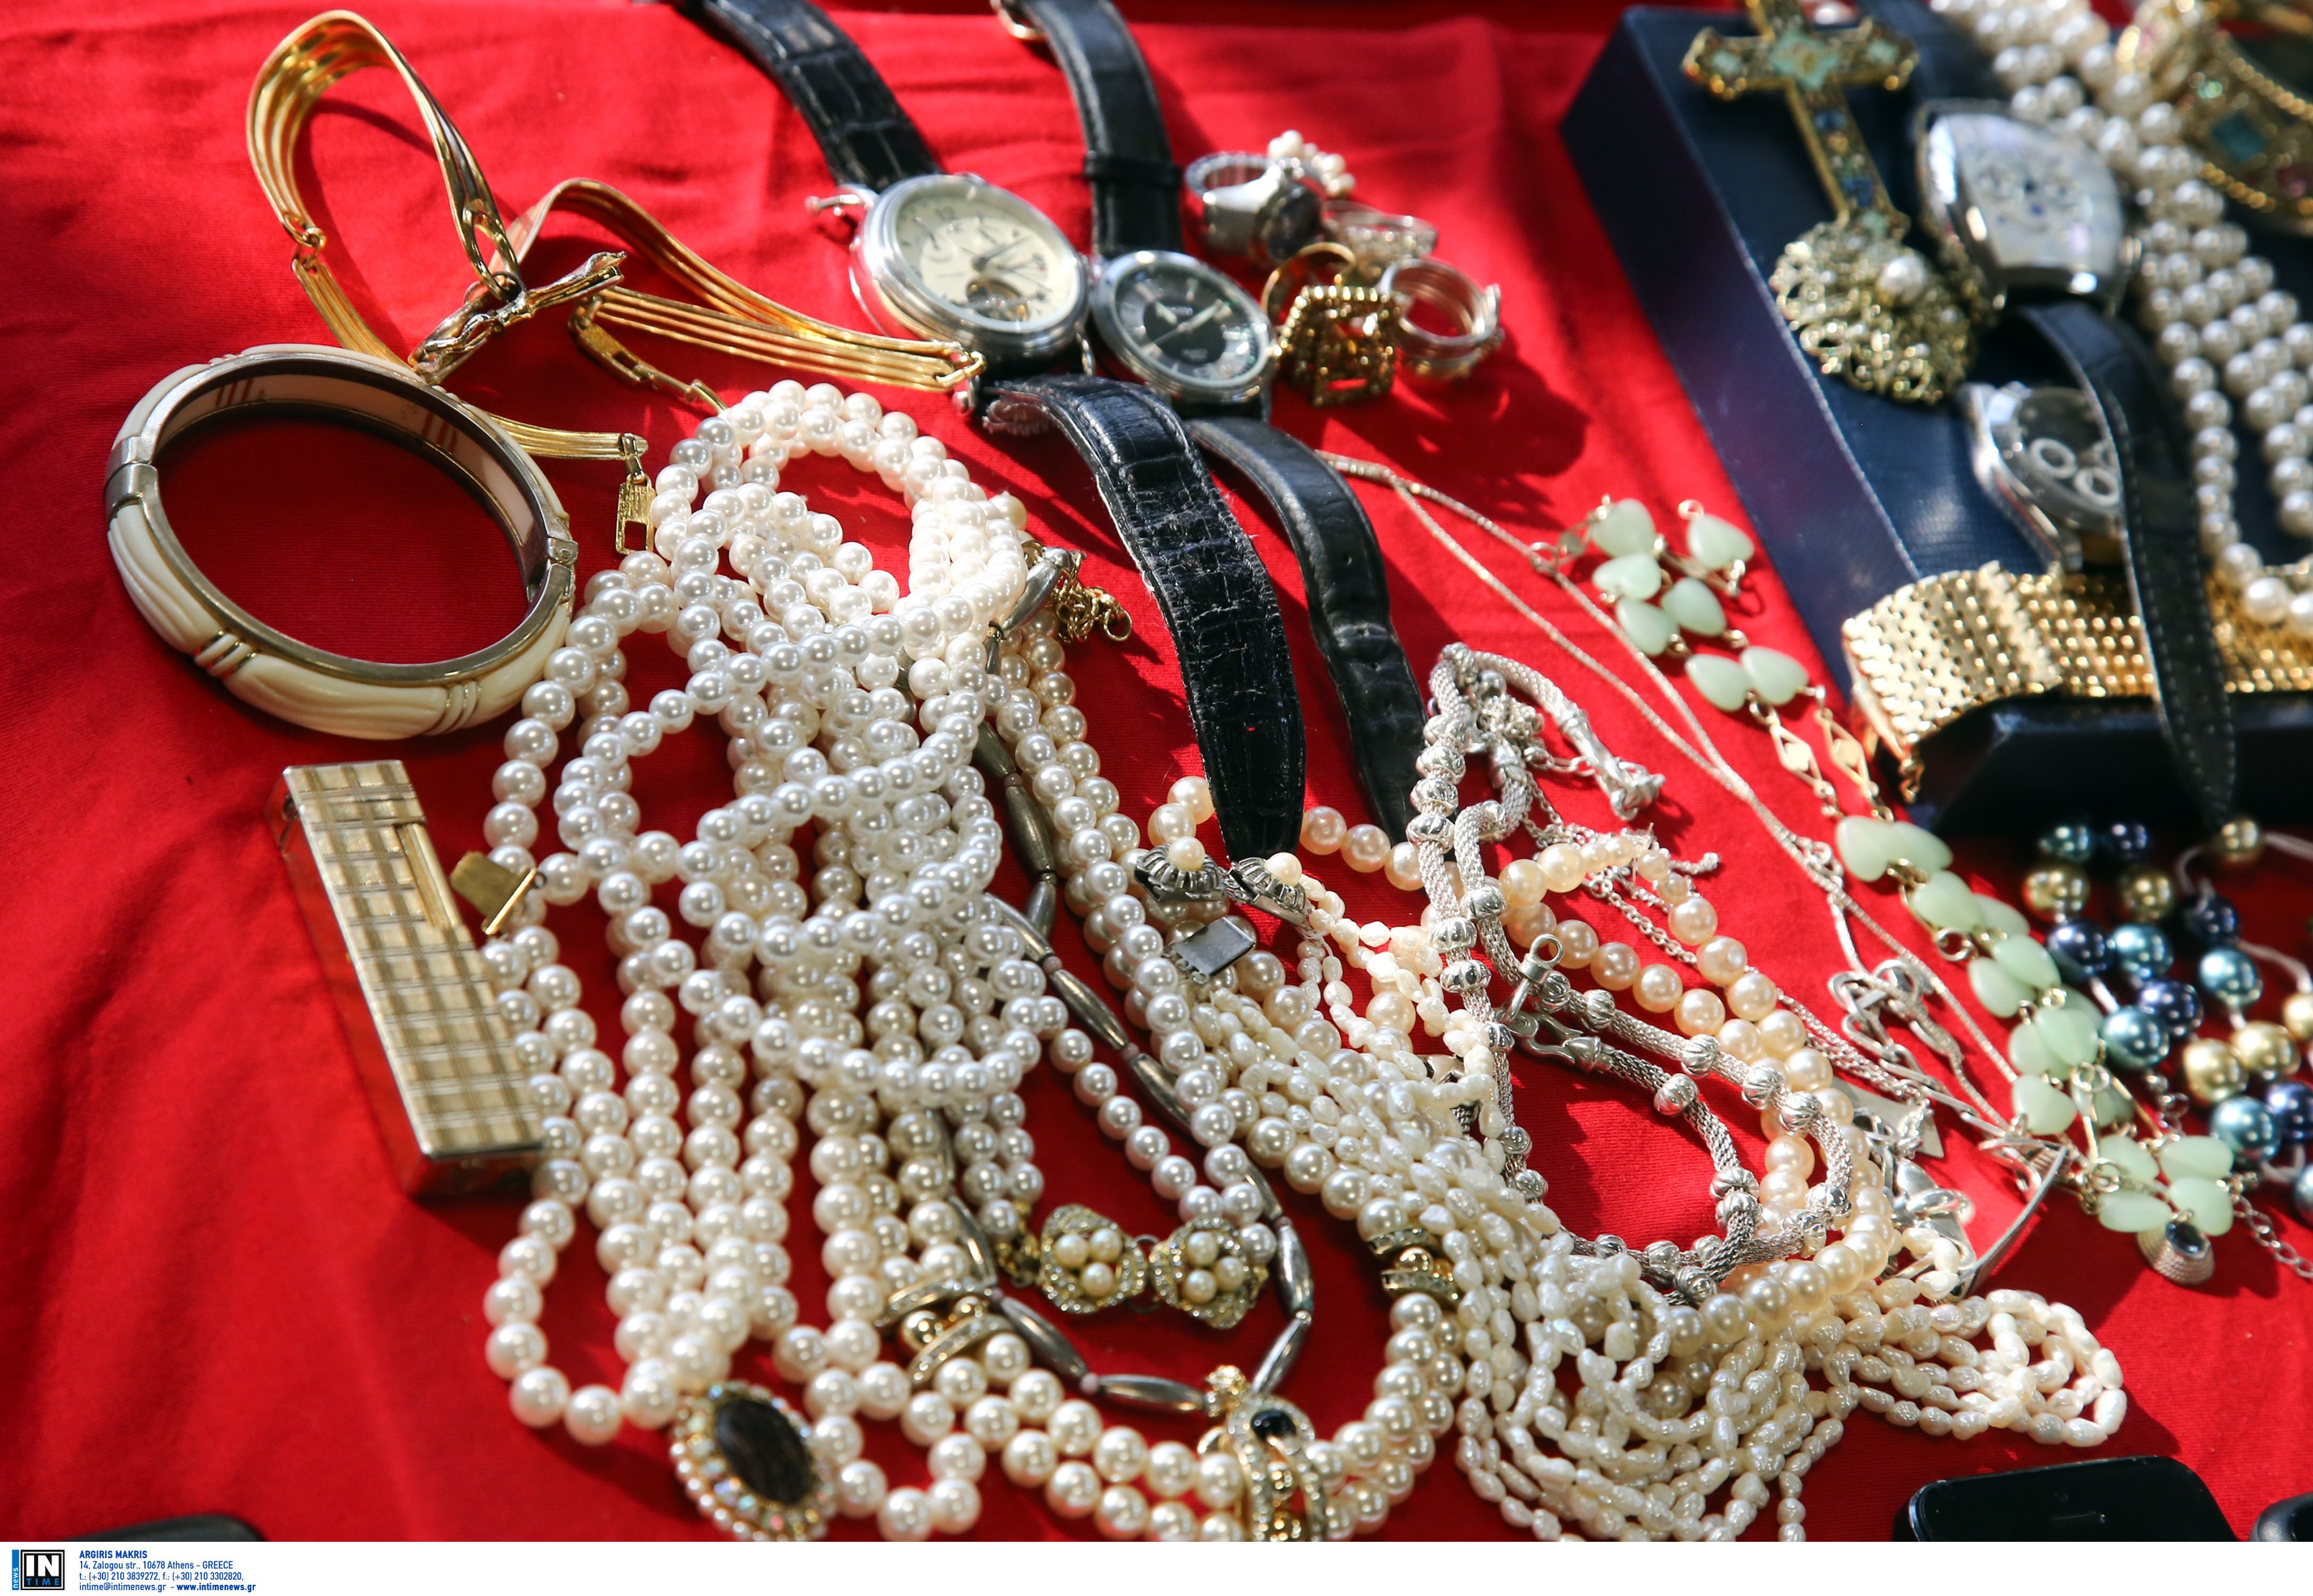 Τρίκαλα: Εγκληματική οργάνωση έβγαλε 552.000 ευρώ μόνο από τα κοσμήματα που βούτηξε μέσα σε σπίτια